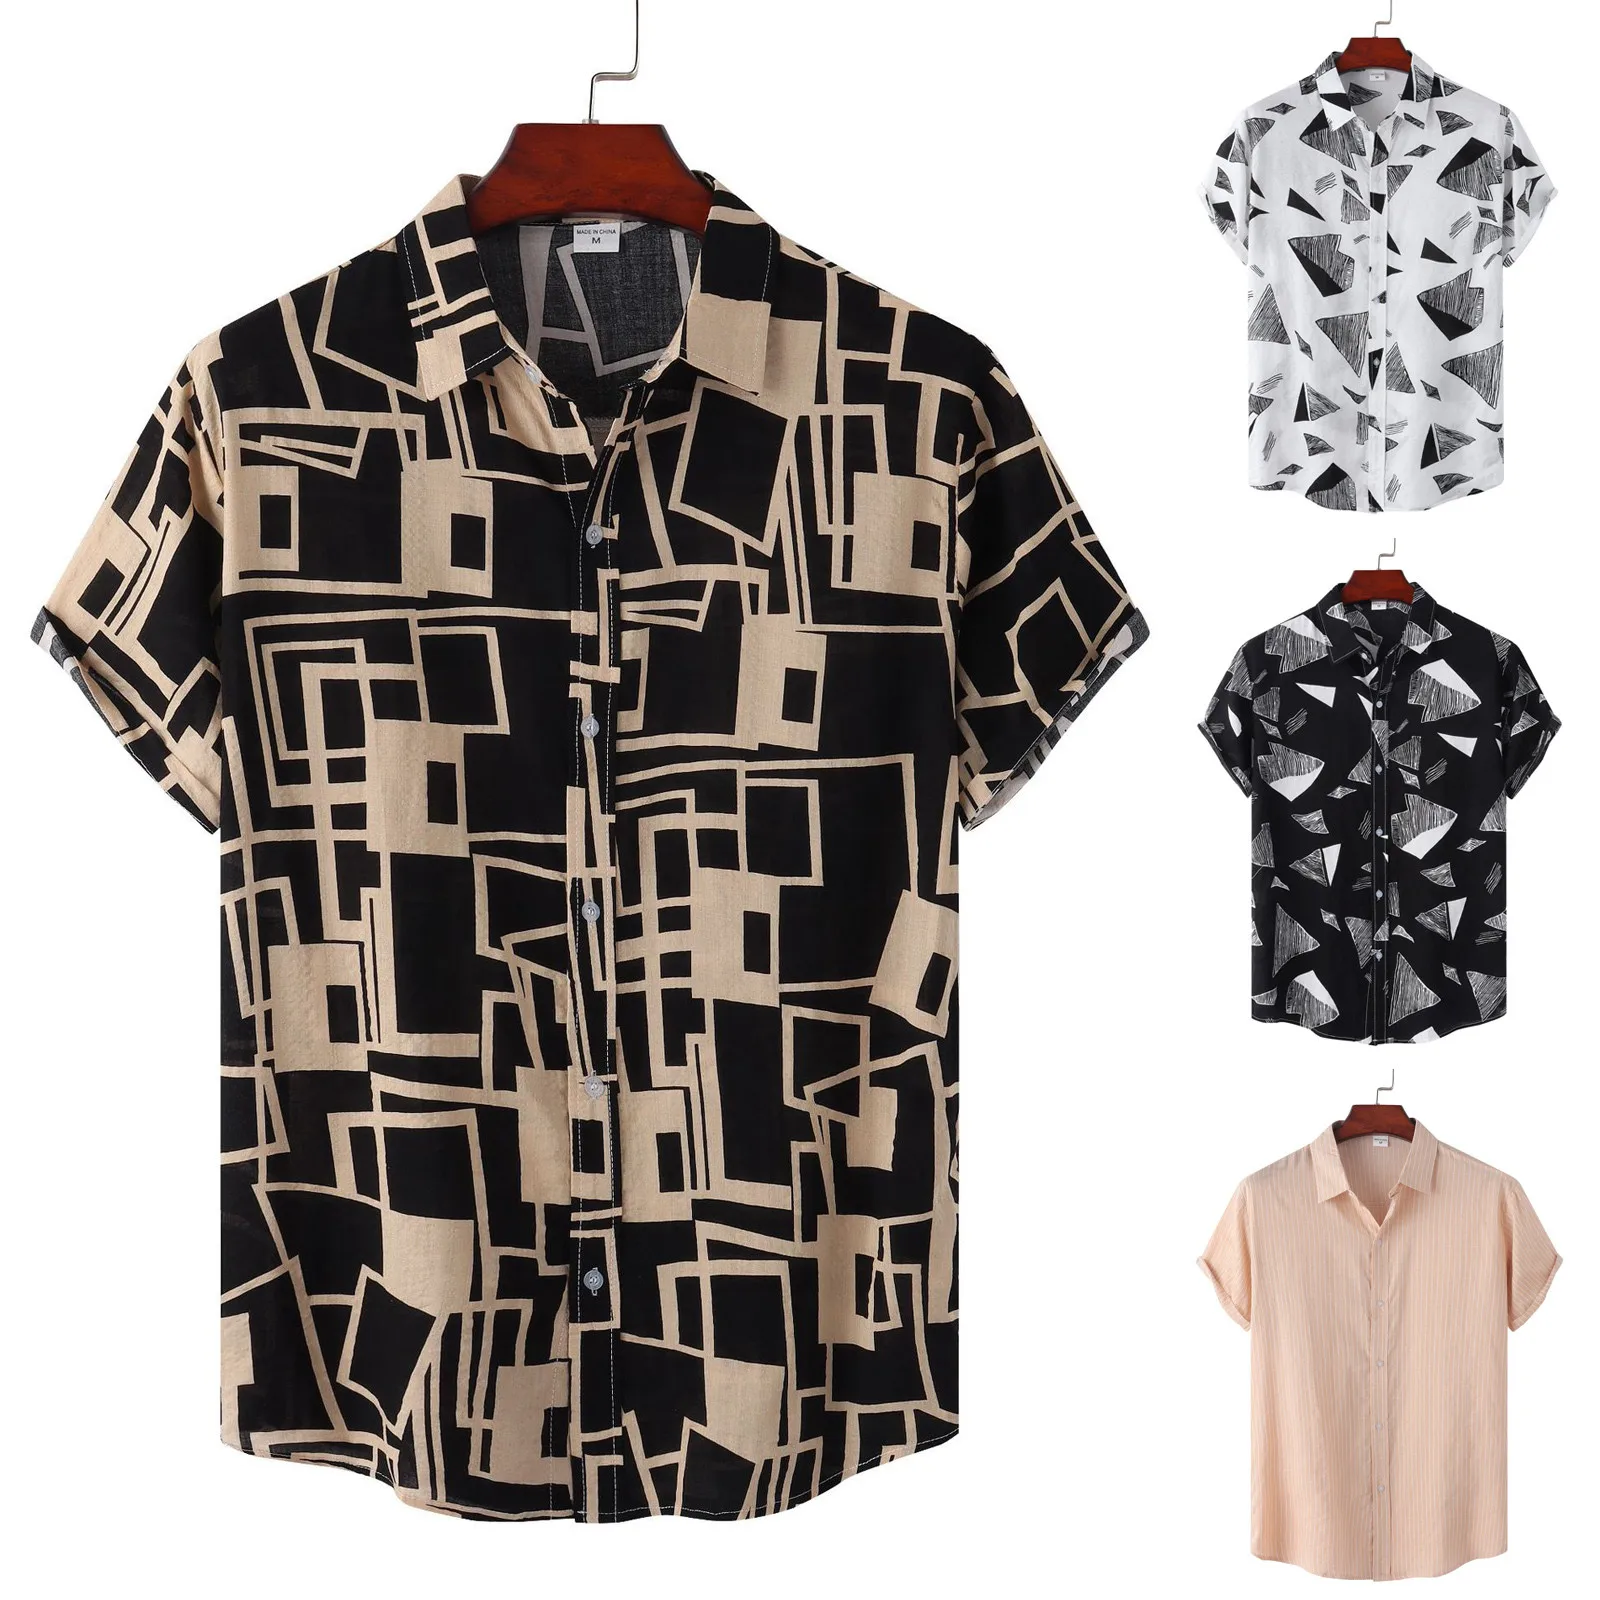 

Рубашка мужская с геометрическим принтом, Пляжная Гавайская блузка свободного покроя, с коротким рукавом, в винтажном стиле, повседневная о...